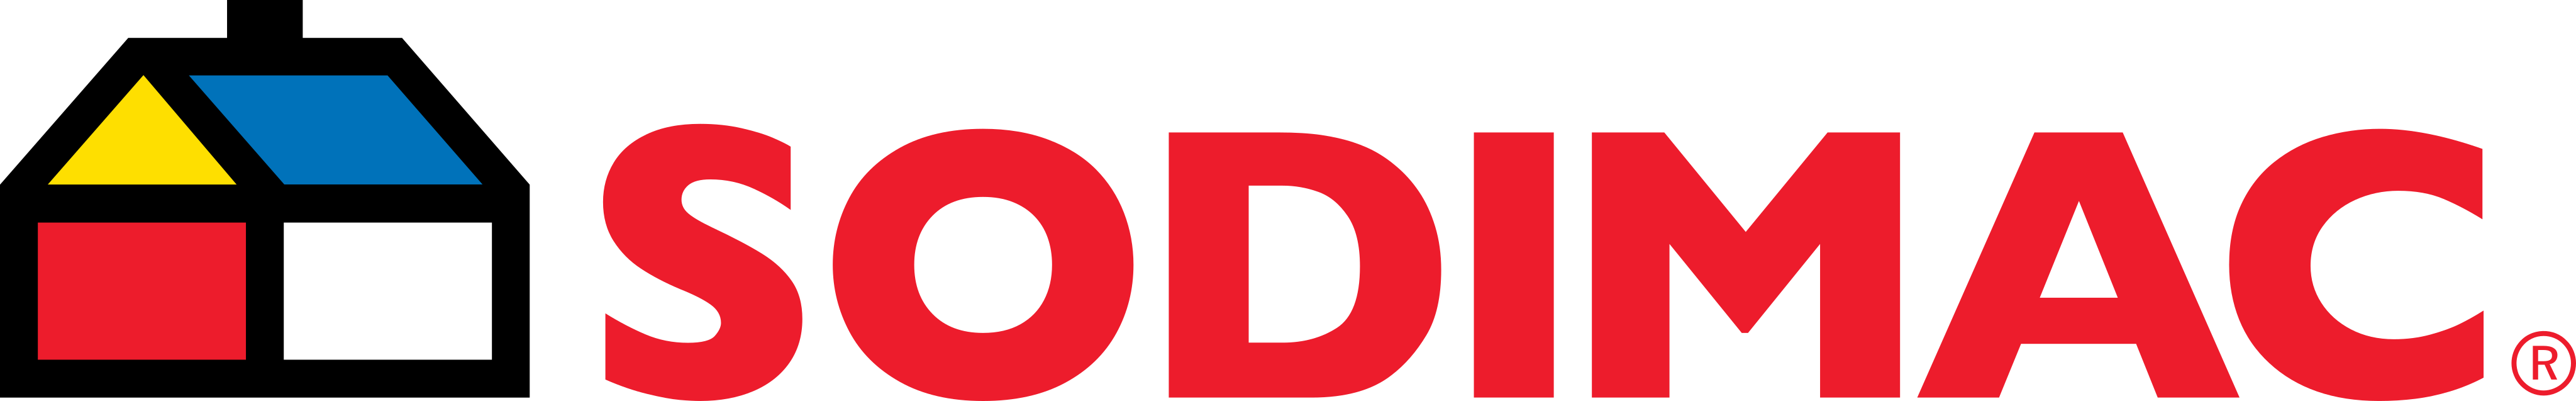 sodimac logo - Sodimac Logo